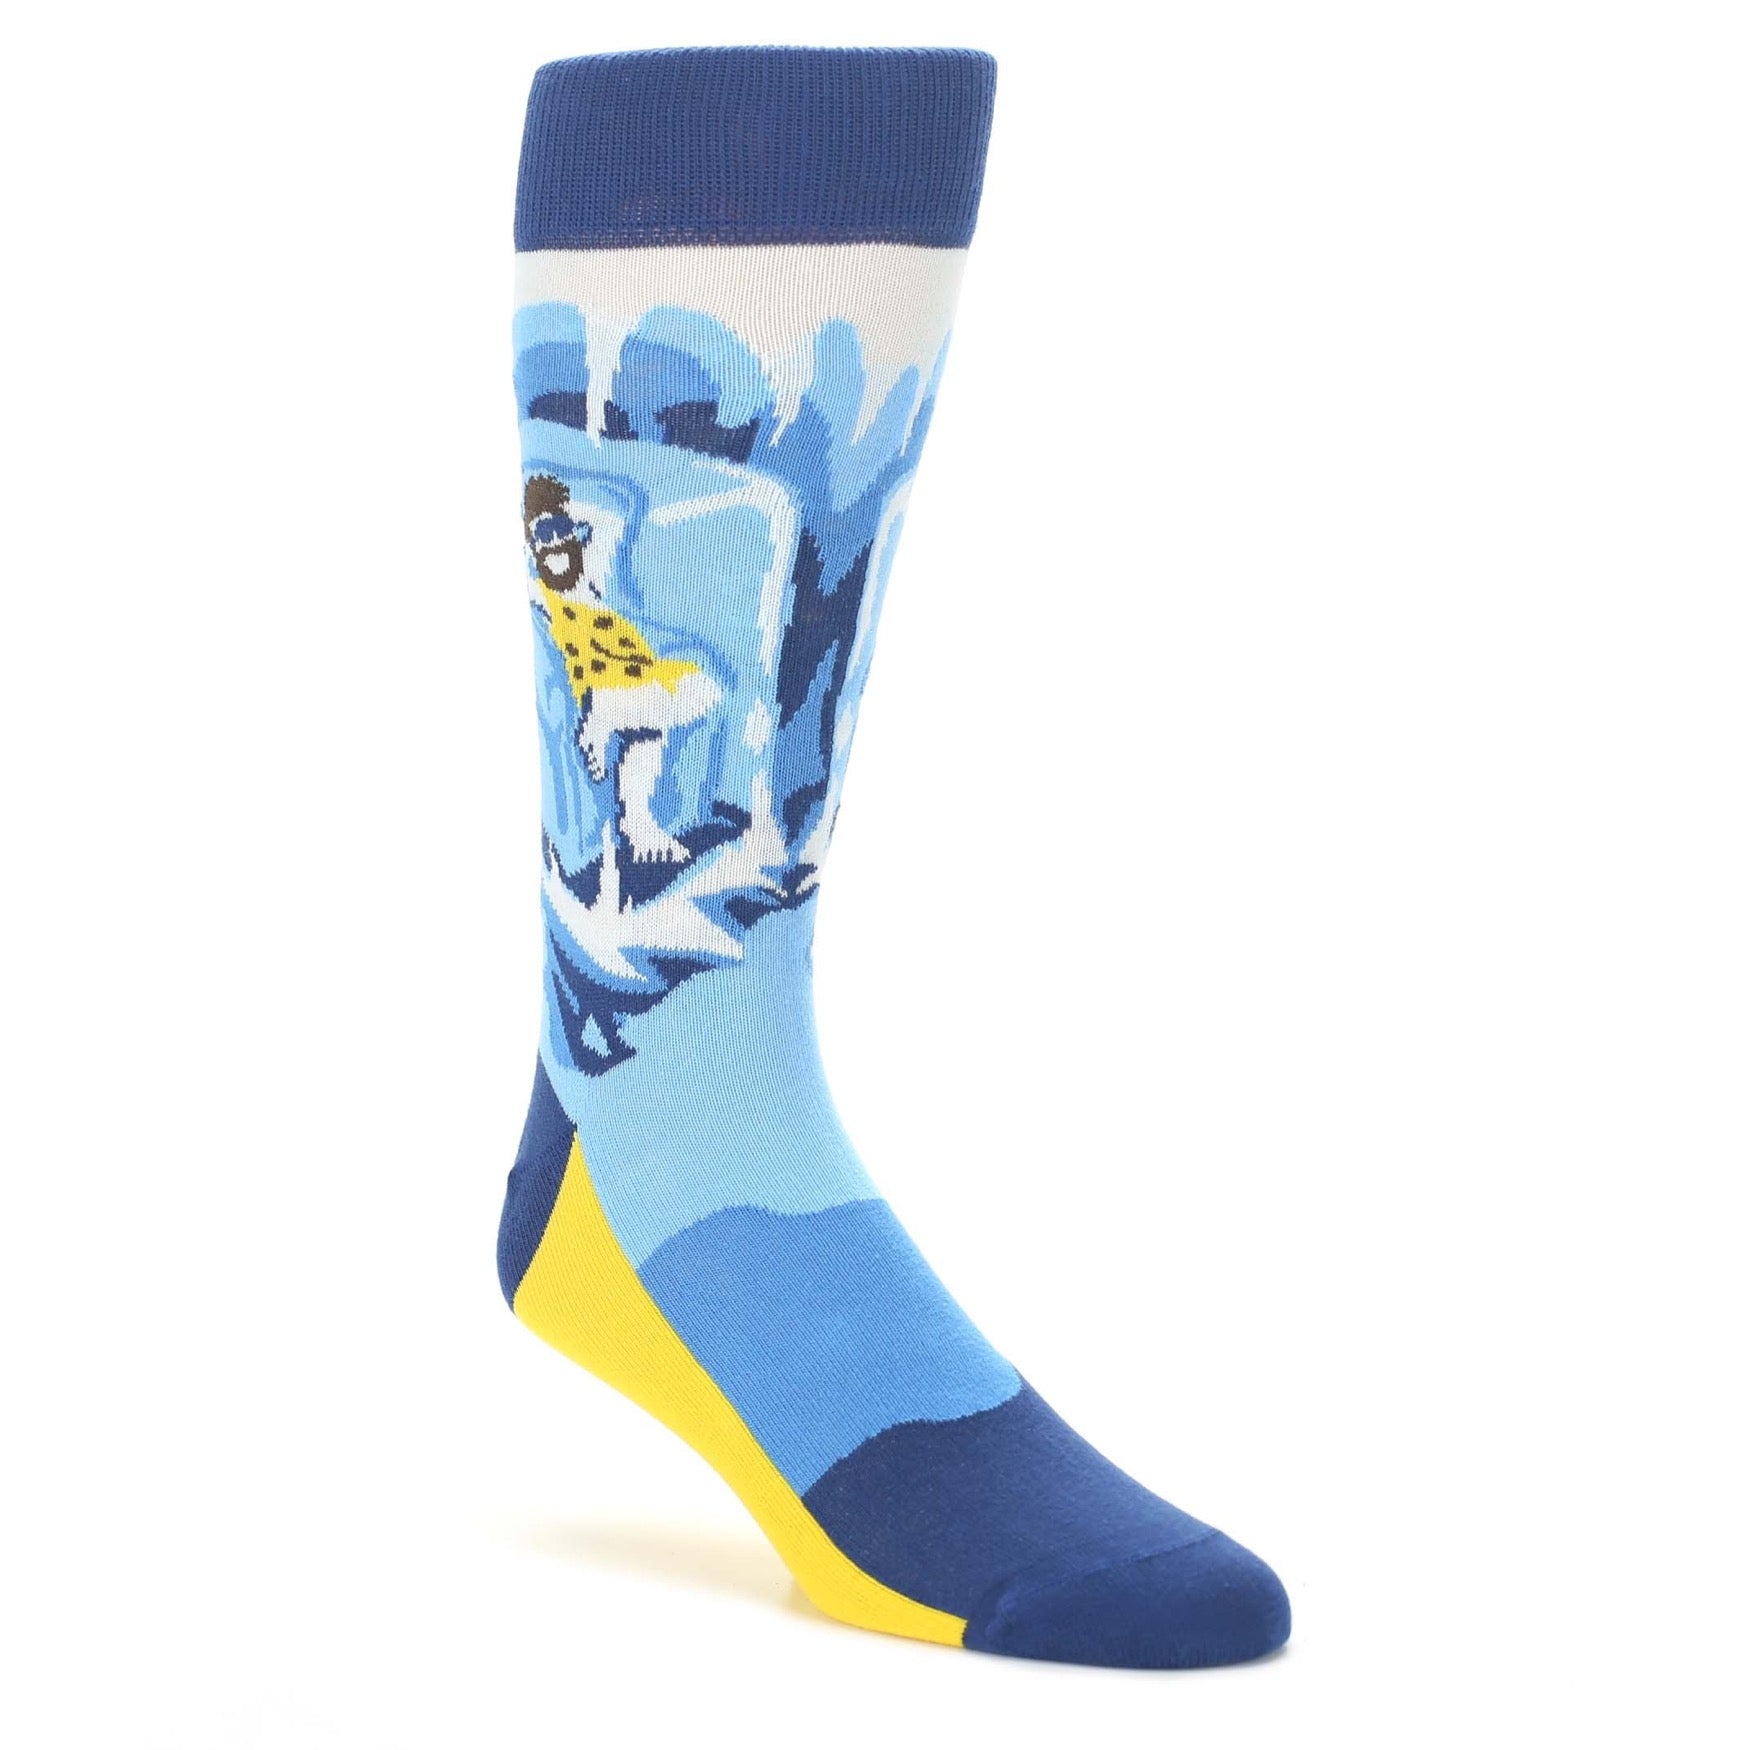 Caveman Socks - Men's Novelty Dress Socks